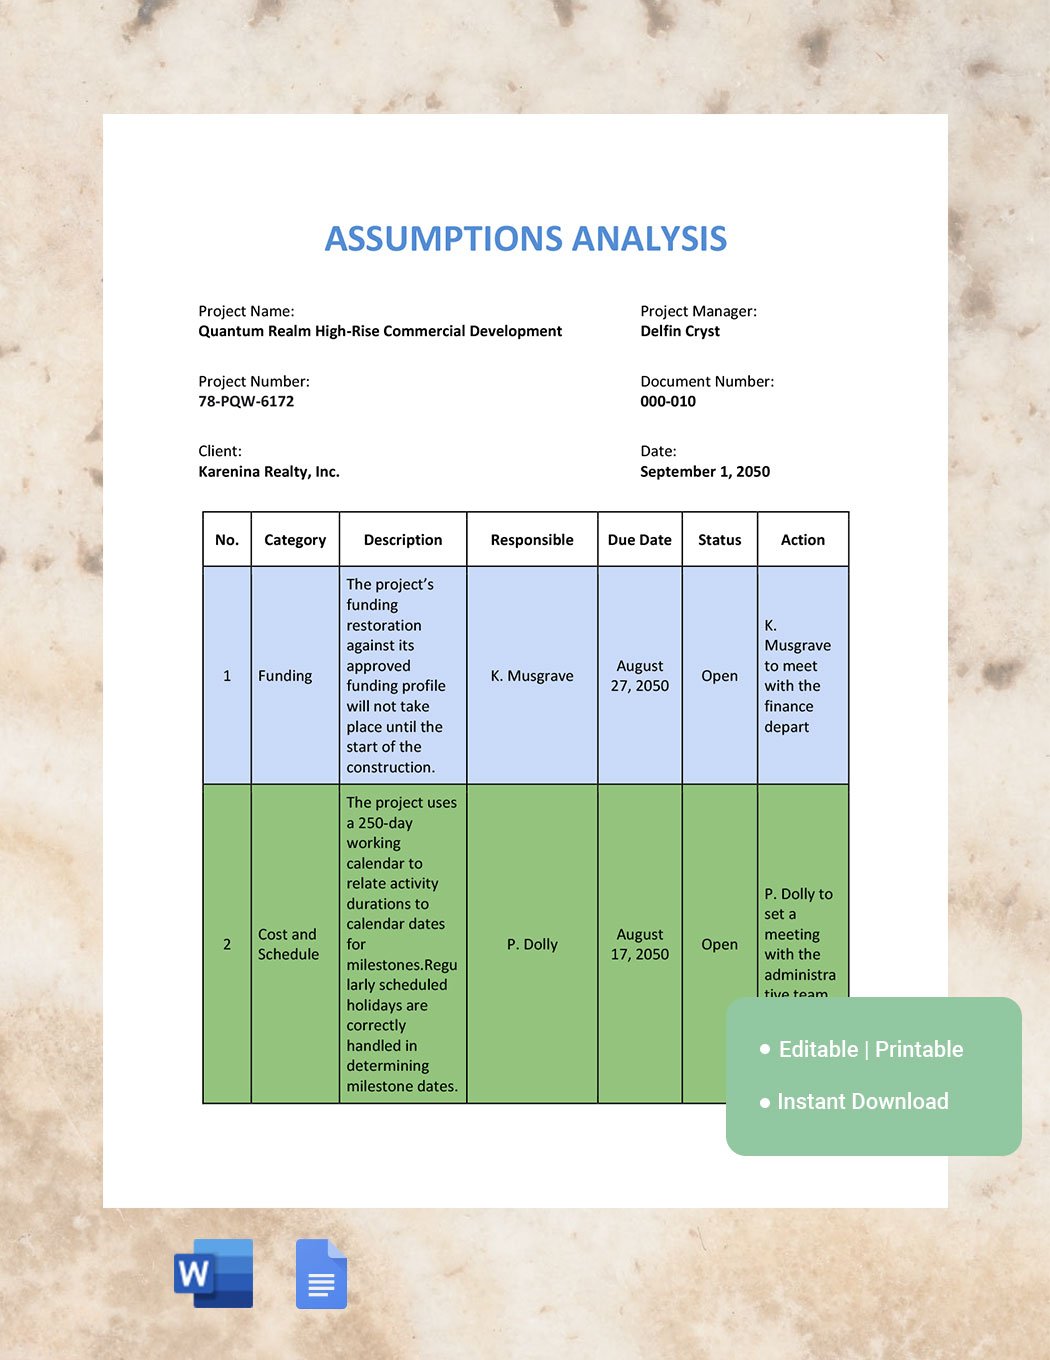 Assumption Analysis Template